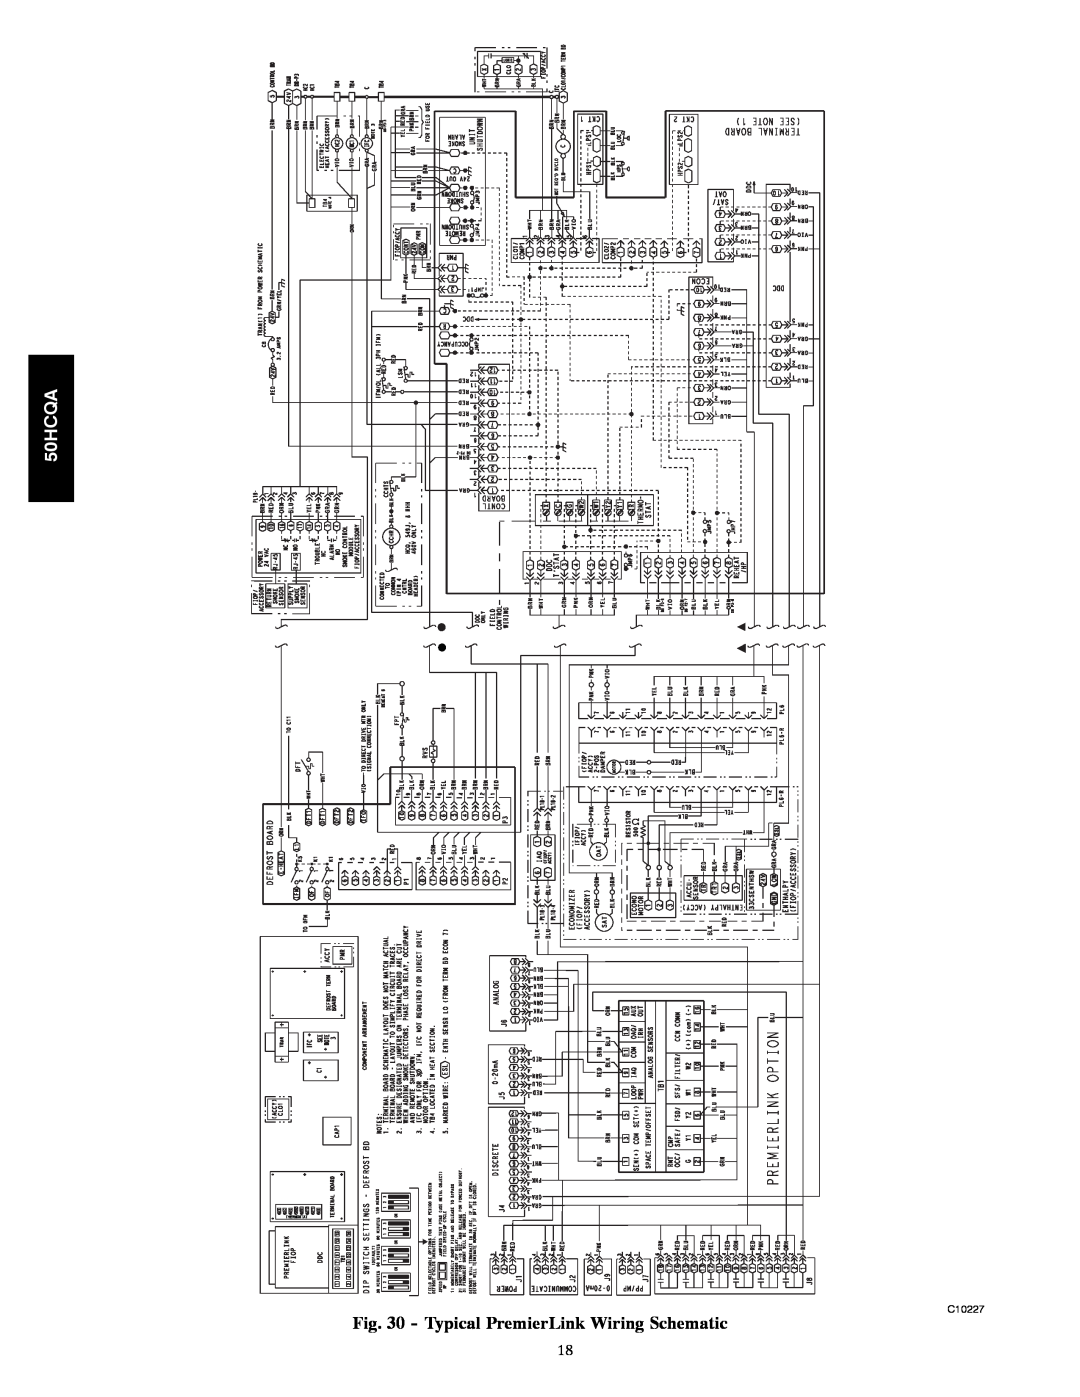 Carrier 50HCQA installation instructions Typical PremierLink Wiring Schematic, C10227 